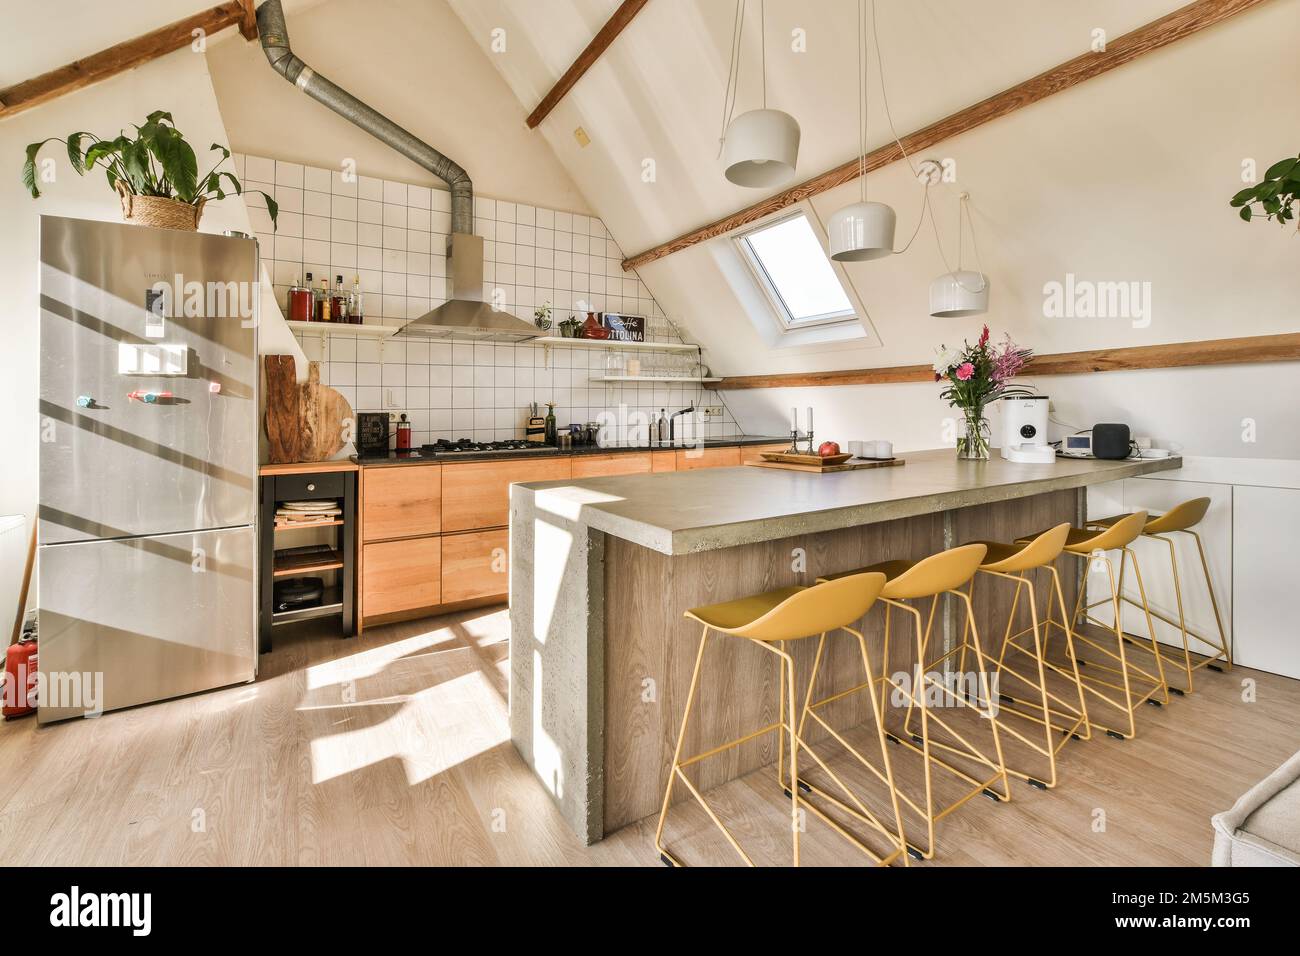 Eine Küche mit Holzfußboden und weißen Fliesen an den Wänden, zwei gelbe Hocker sind vor der Theke Stockfoto